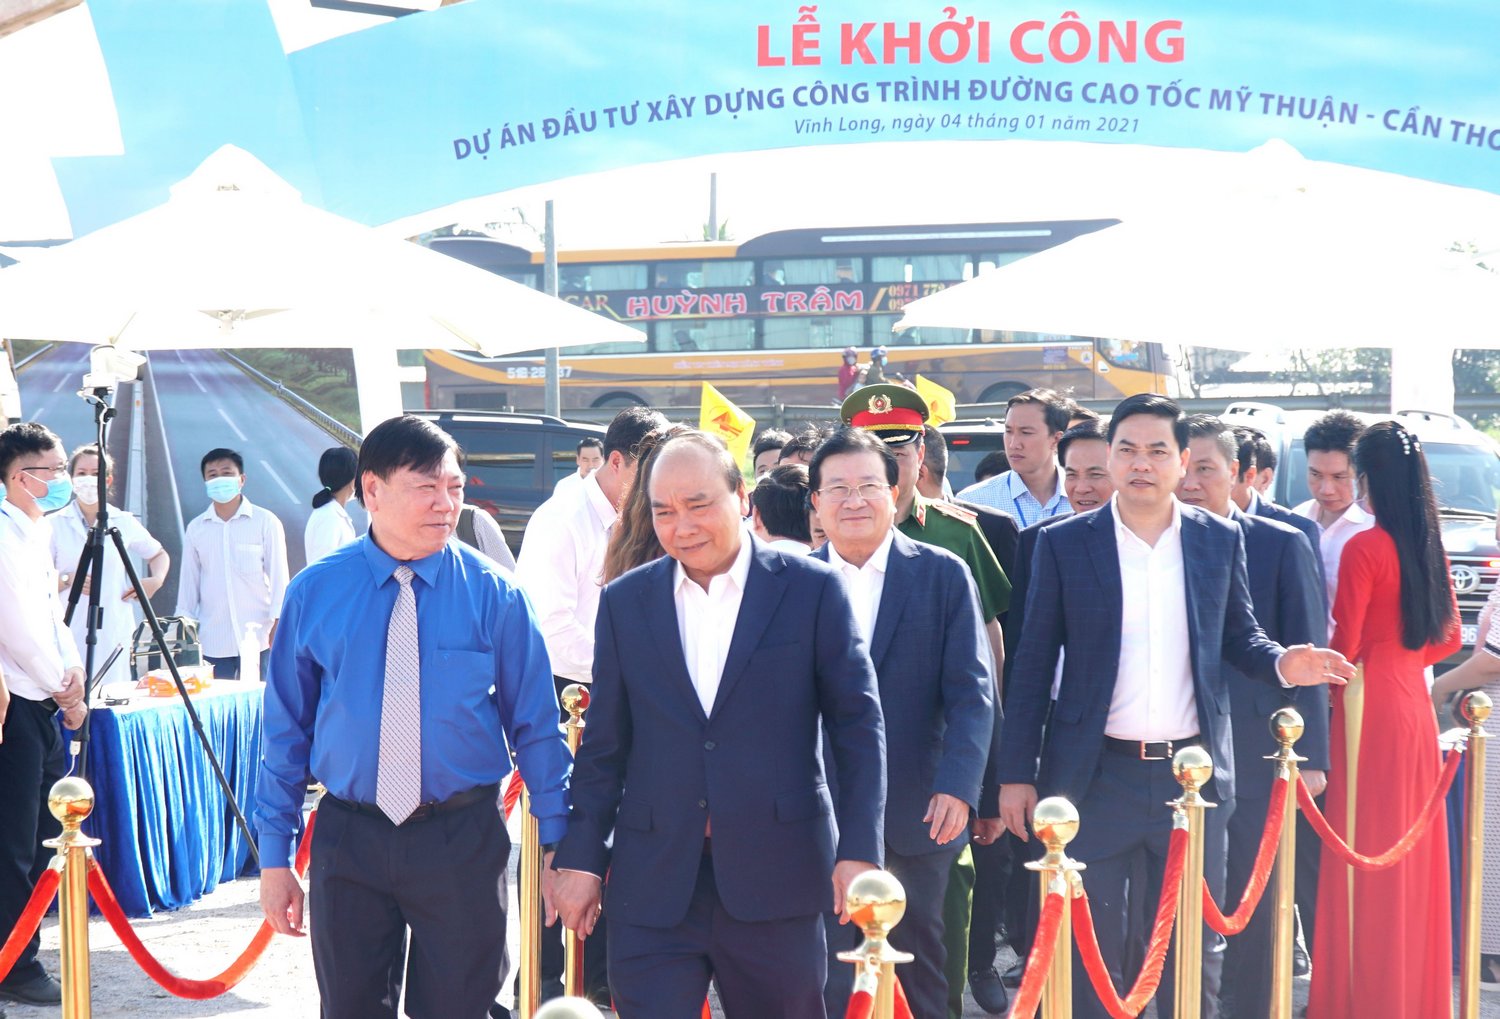 Thủ tướng Chính phủ Nguyễn Xuân Phúc dự lễ khởi công cao tốc Mỹ Thuận- Cần Thơ sáng 4/1/2021 